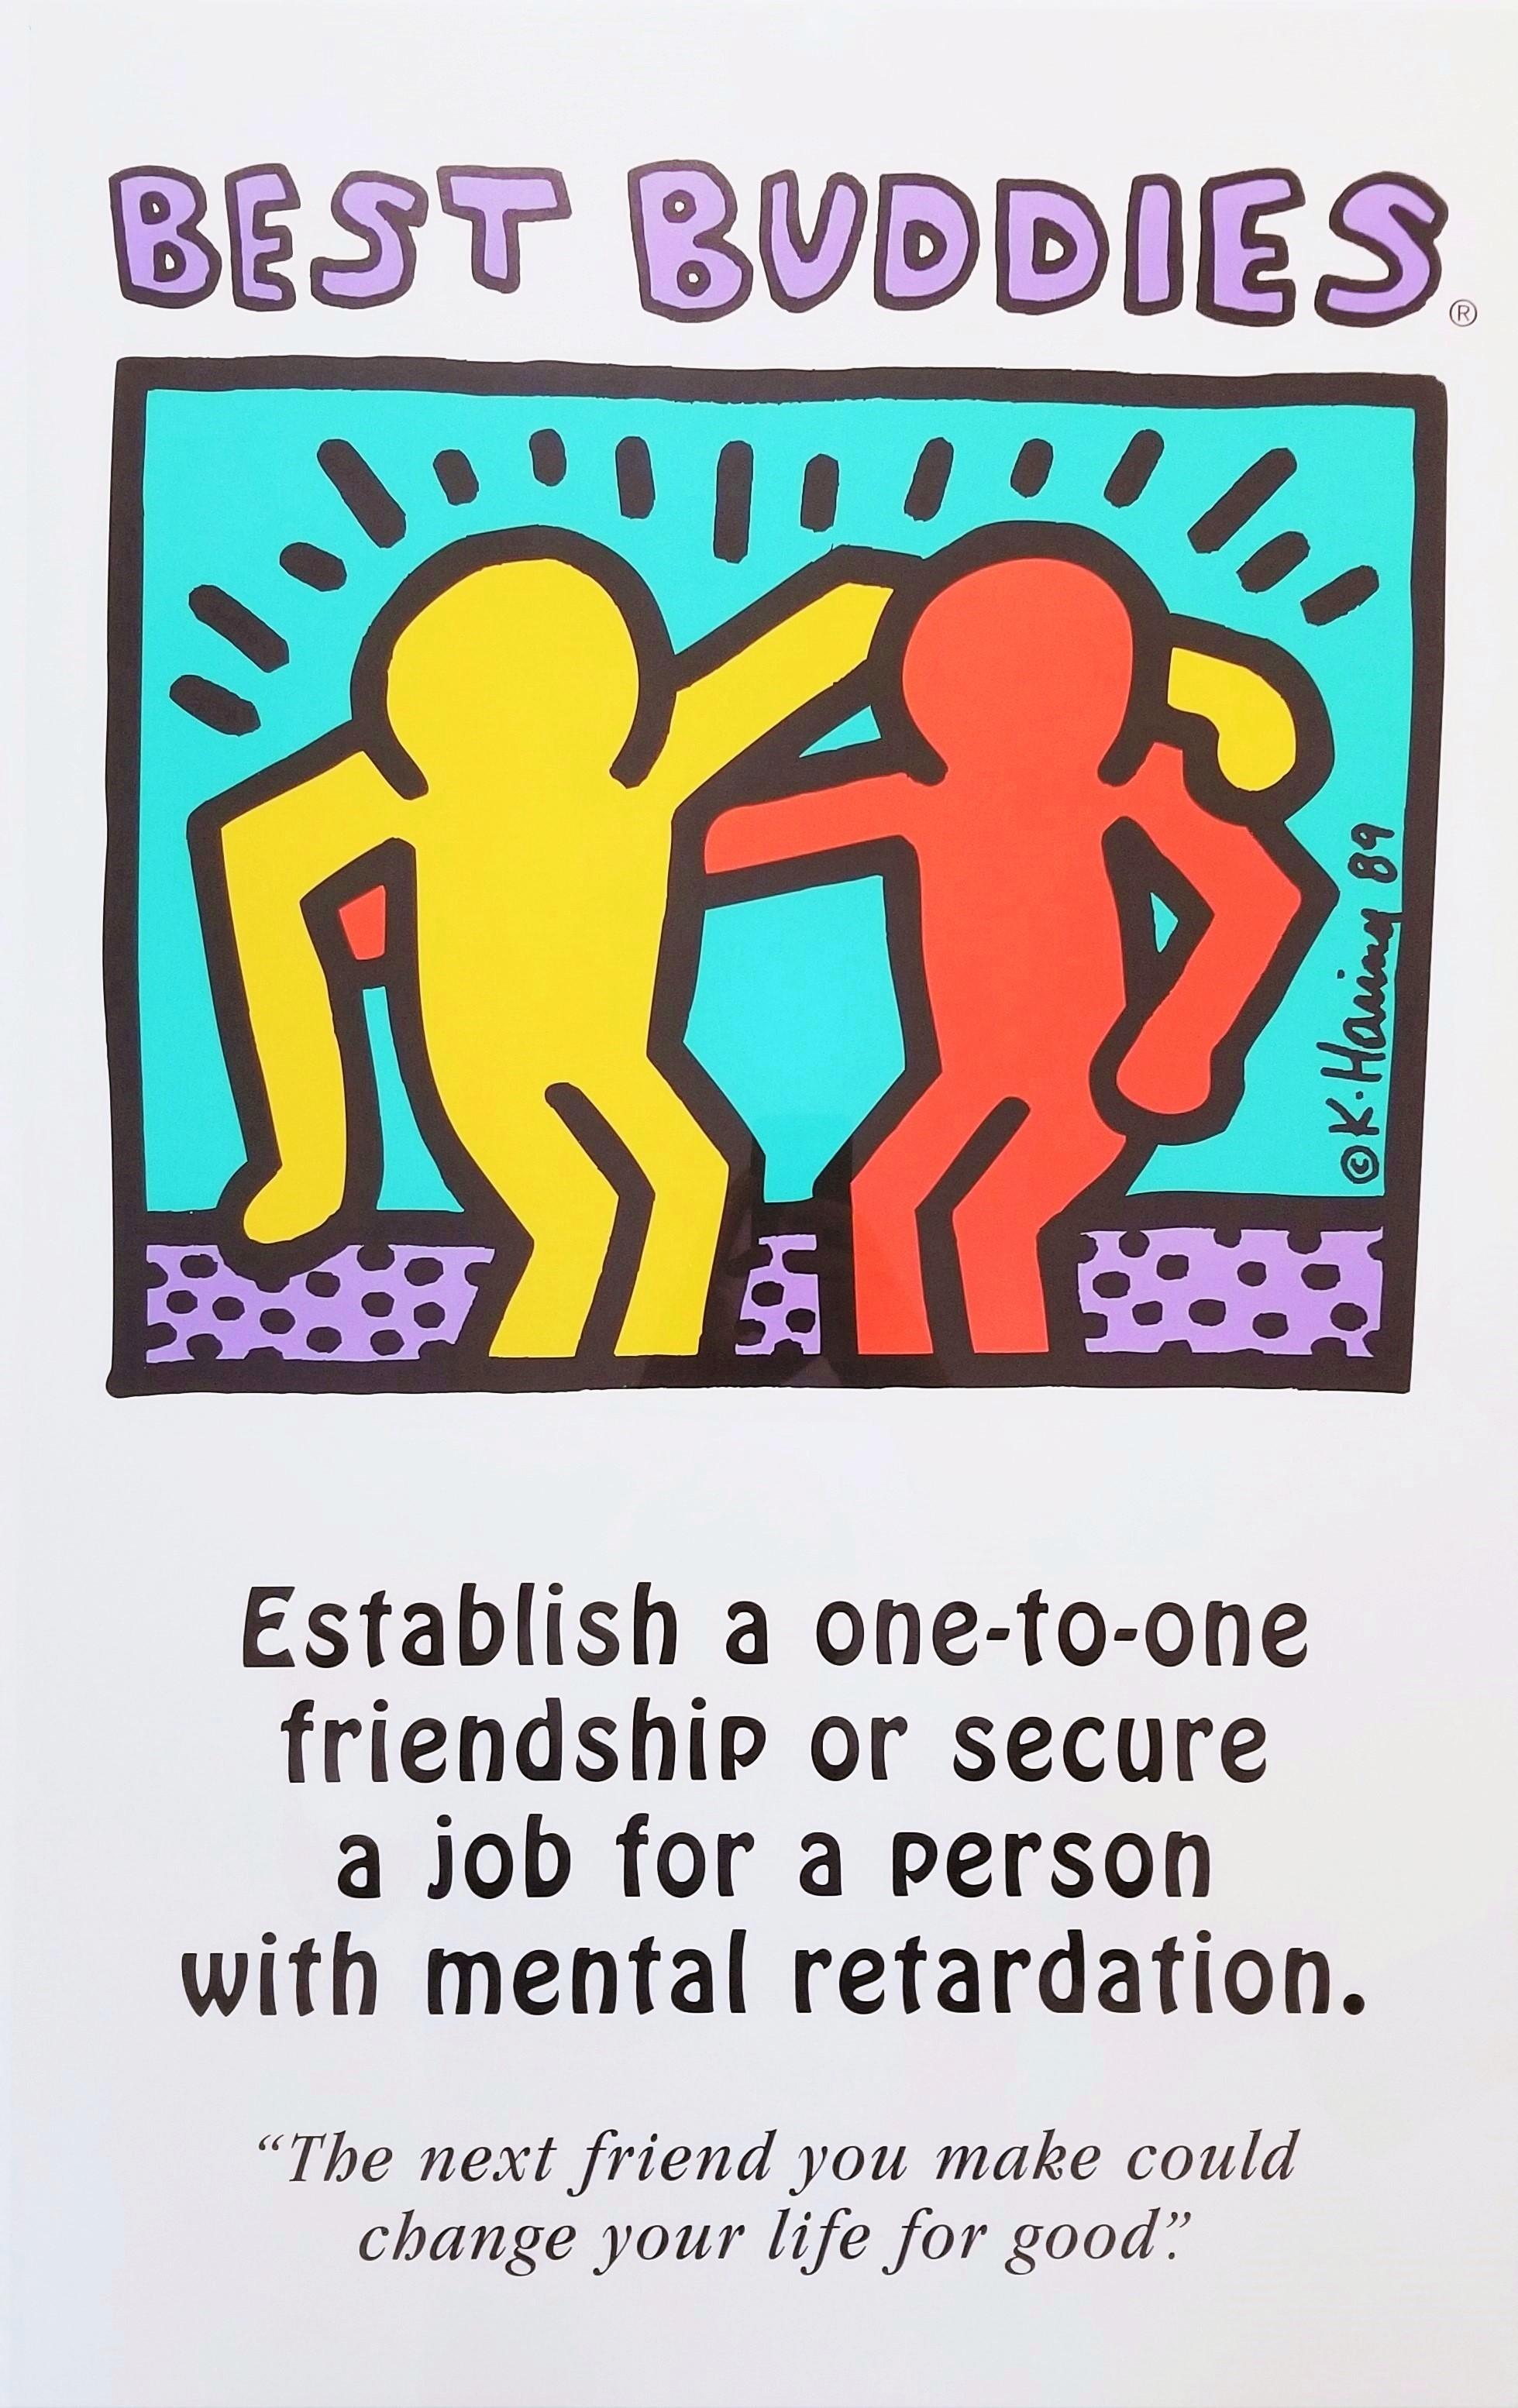 Künstler: (nach) Keith Haring (Amerikaner, 1958-1990)
Titel: "Best Buddies"
*Unsigniert ausgegeben, jedoch von Haring in der Platte signiert und datiert (gedruckte Signatur) Mitte rechts
Jahr: 1989
Medium: Original Offset-Lithographie, Poster auf